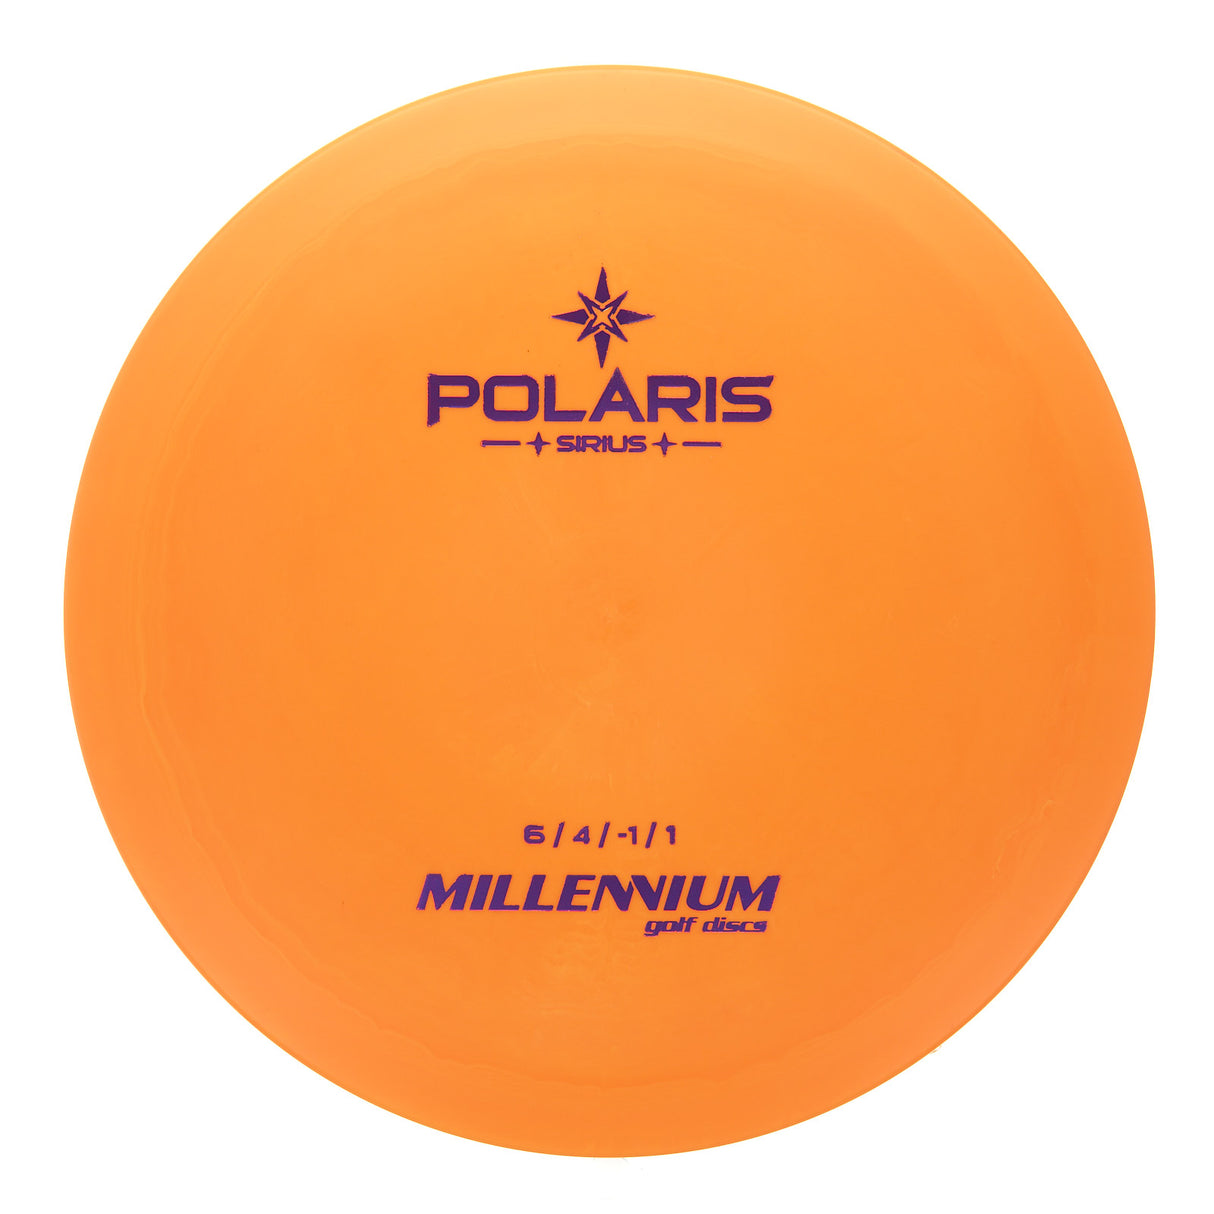 Millennium Polaris LS - Sirius 176g | Style 0001